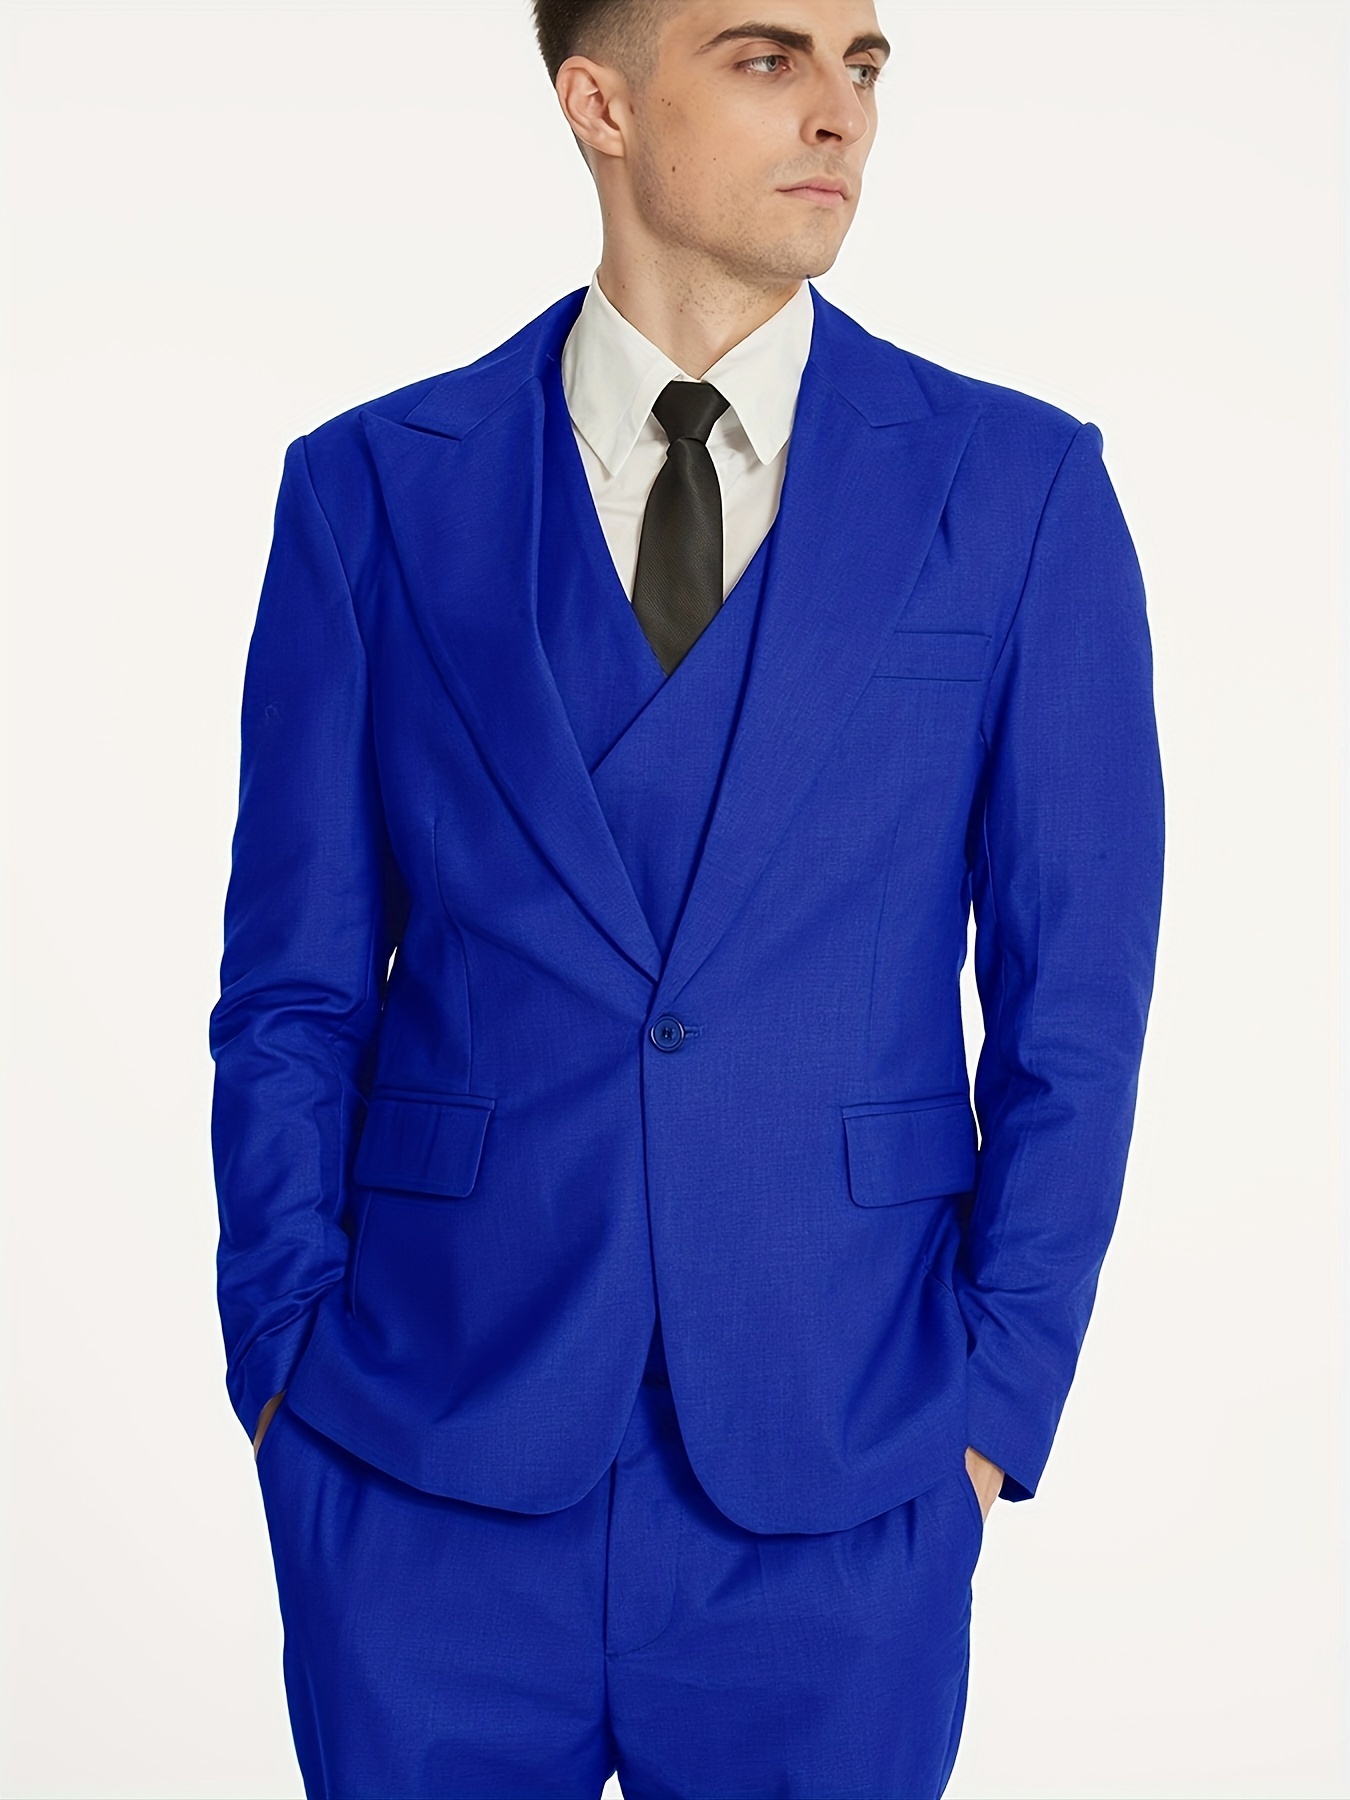 Ensemble trois pièces homme bleu, comprenant une veste de costume, un gilet  et un pantalon de